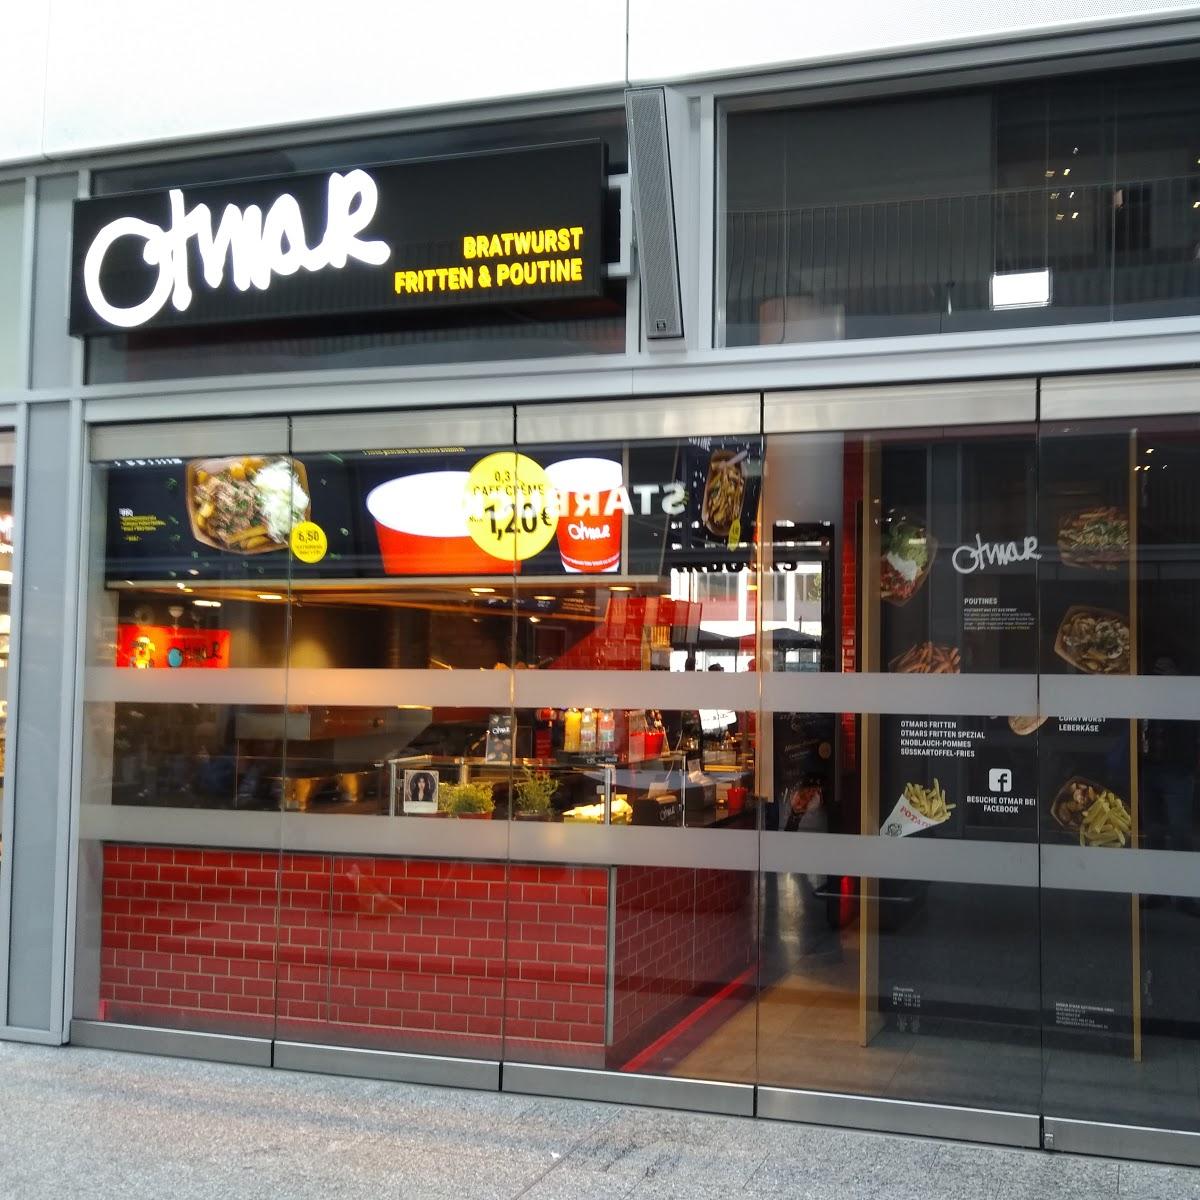 Restaurant "Otmar" in Münster